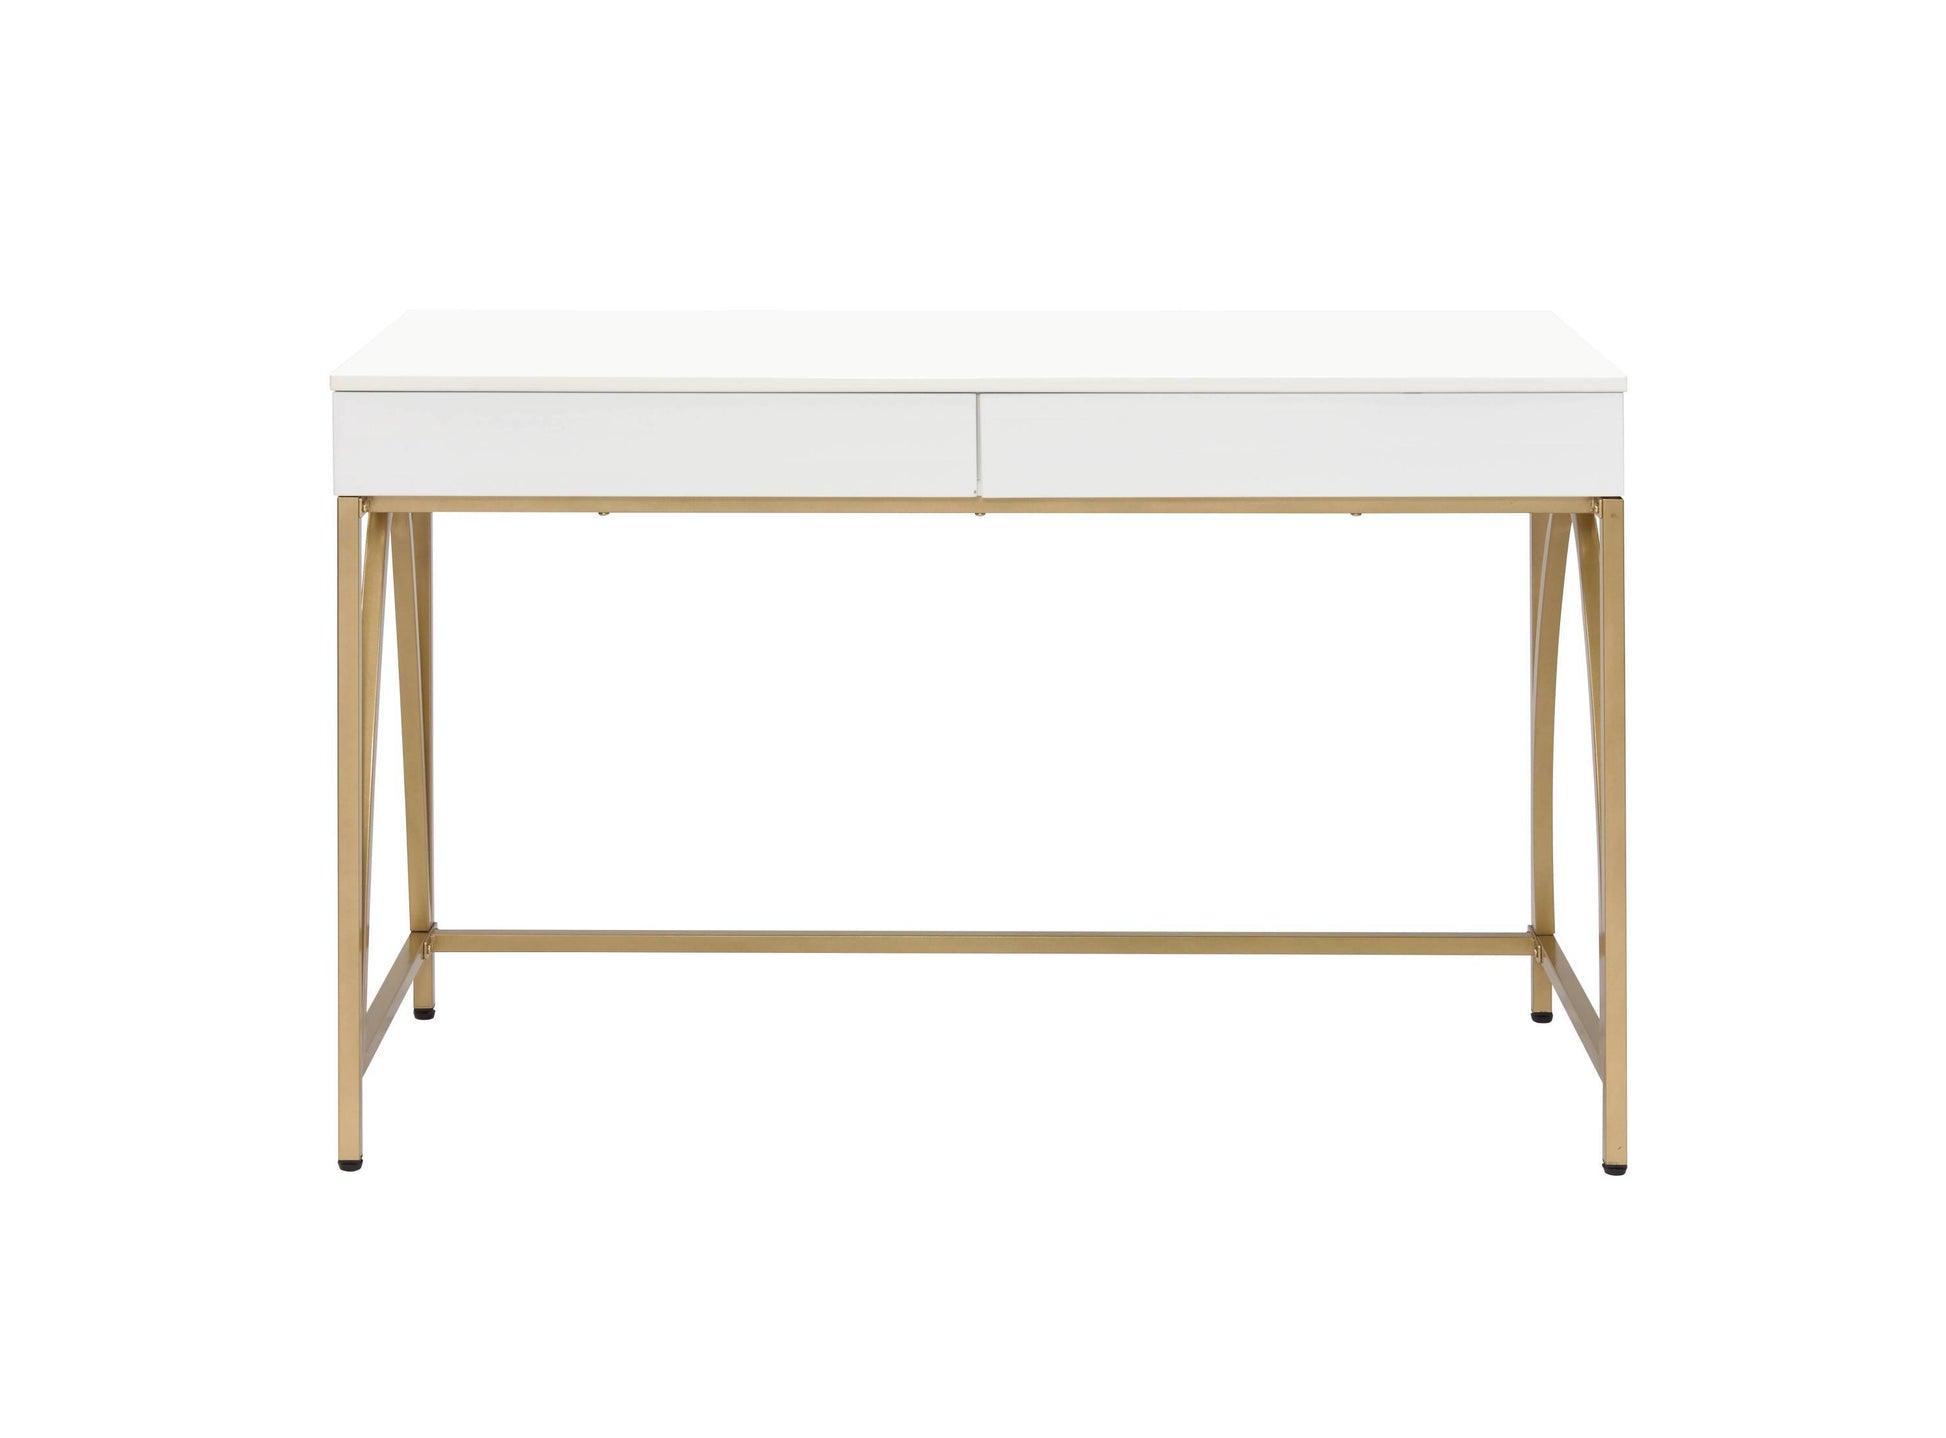 ACME Lightmane Vanity Desk in White High Gloss & Gold Finish AC00900